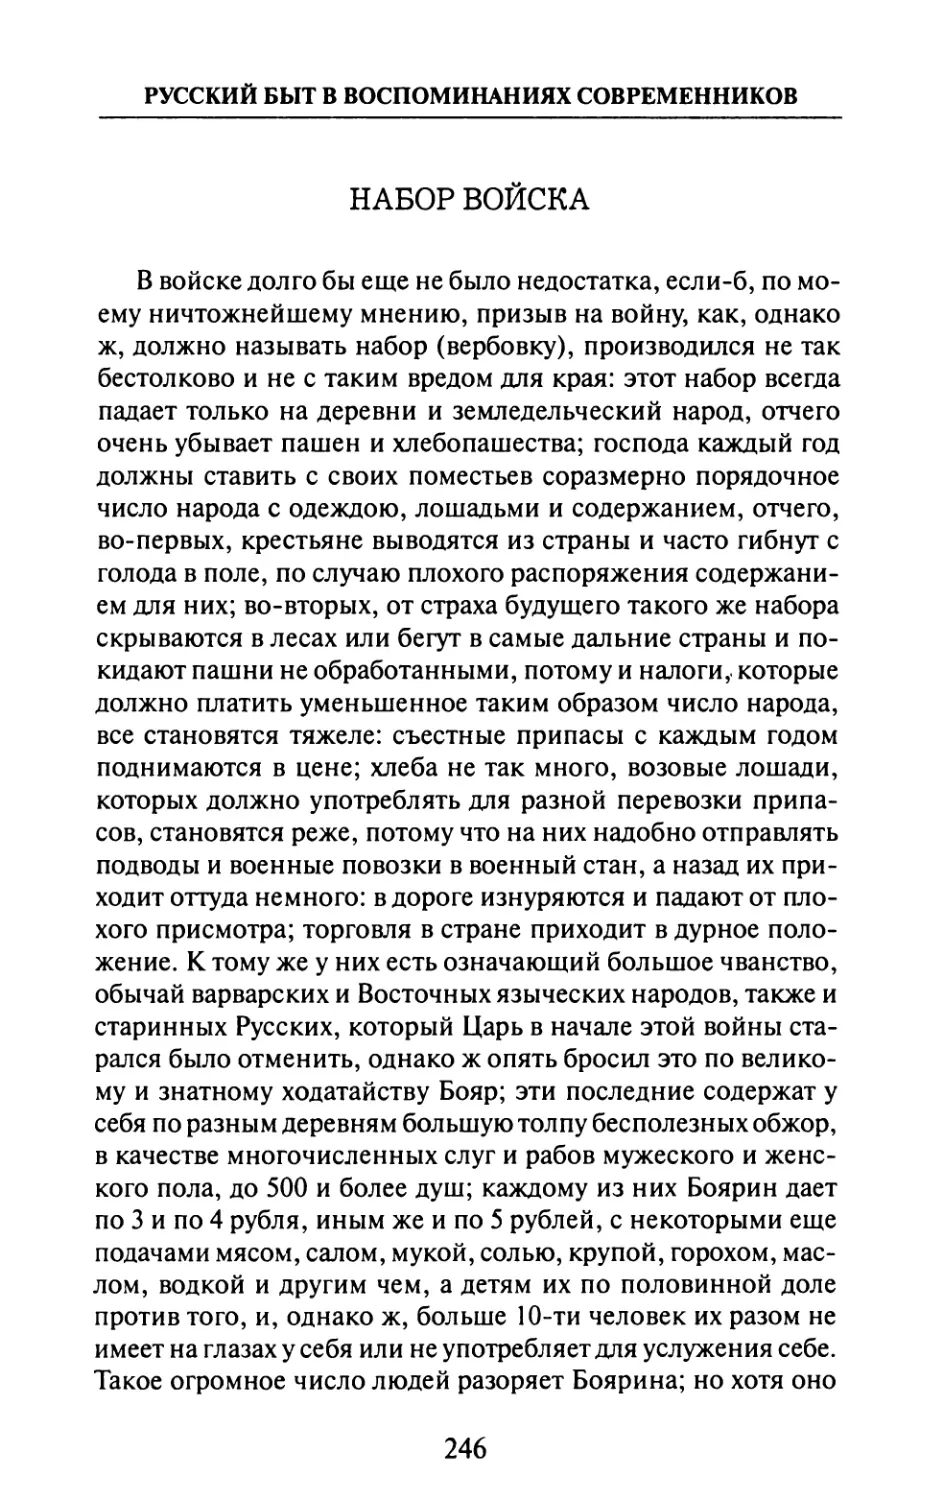 Набор  войска  —  О.  Плейер.  «О  нынешнем  состоянии  государственного  управления  в  Московии.  Донесения  в  1710  г.»